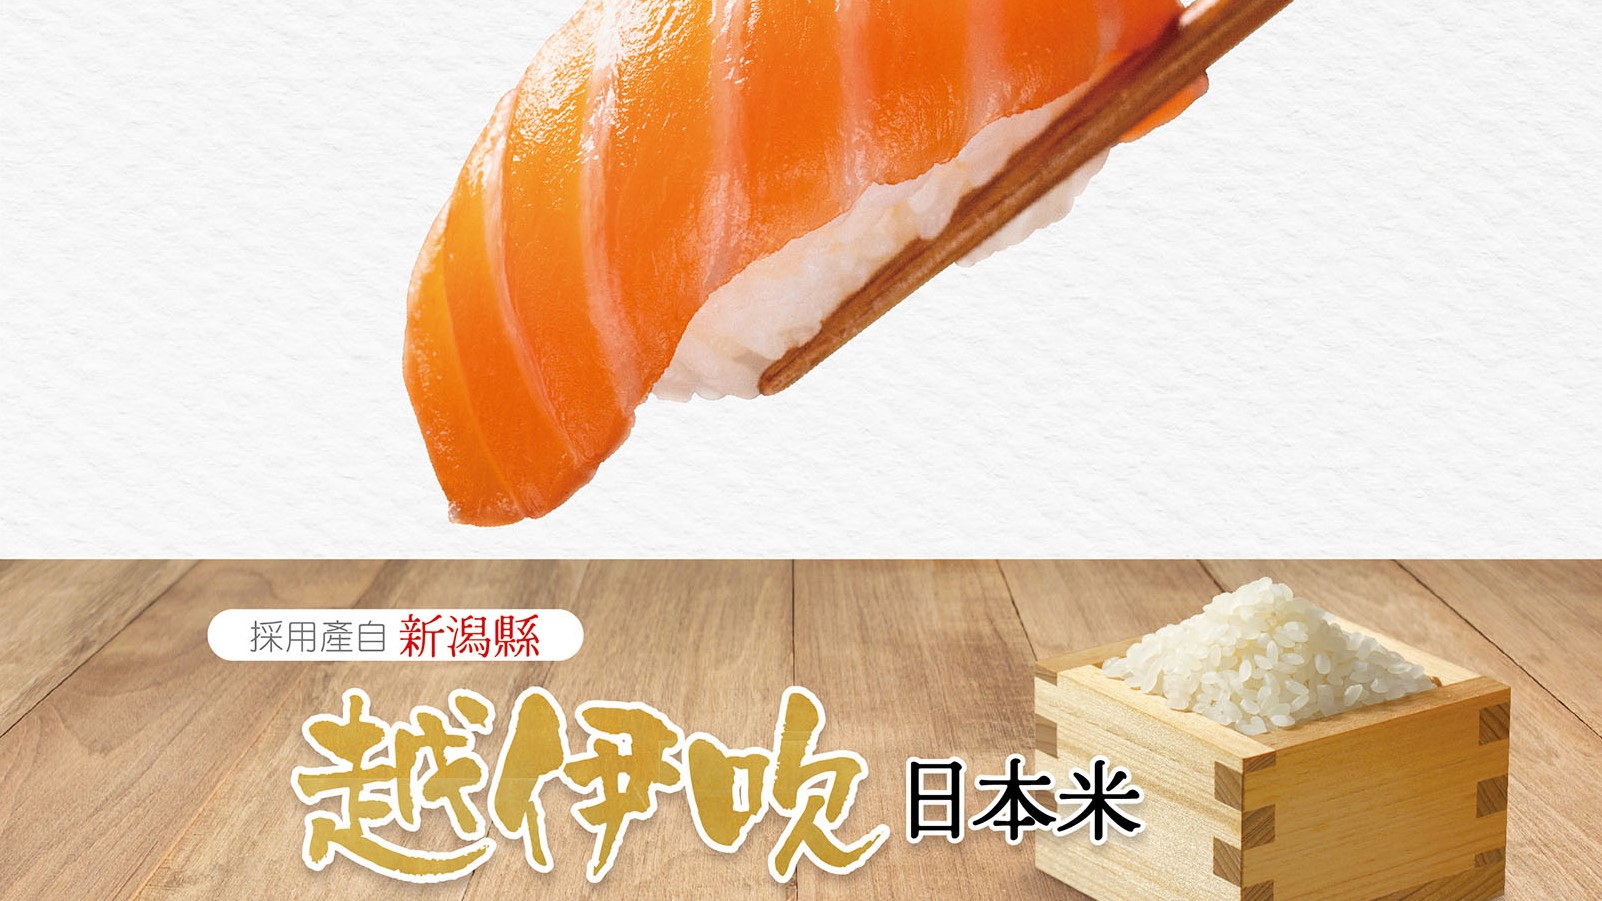 【美食】日本「越伊吹」米登陸壽司連鎖店